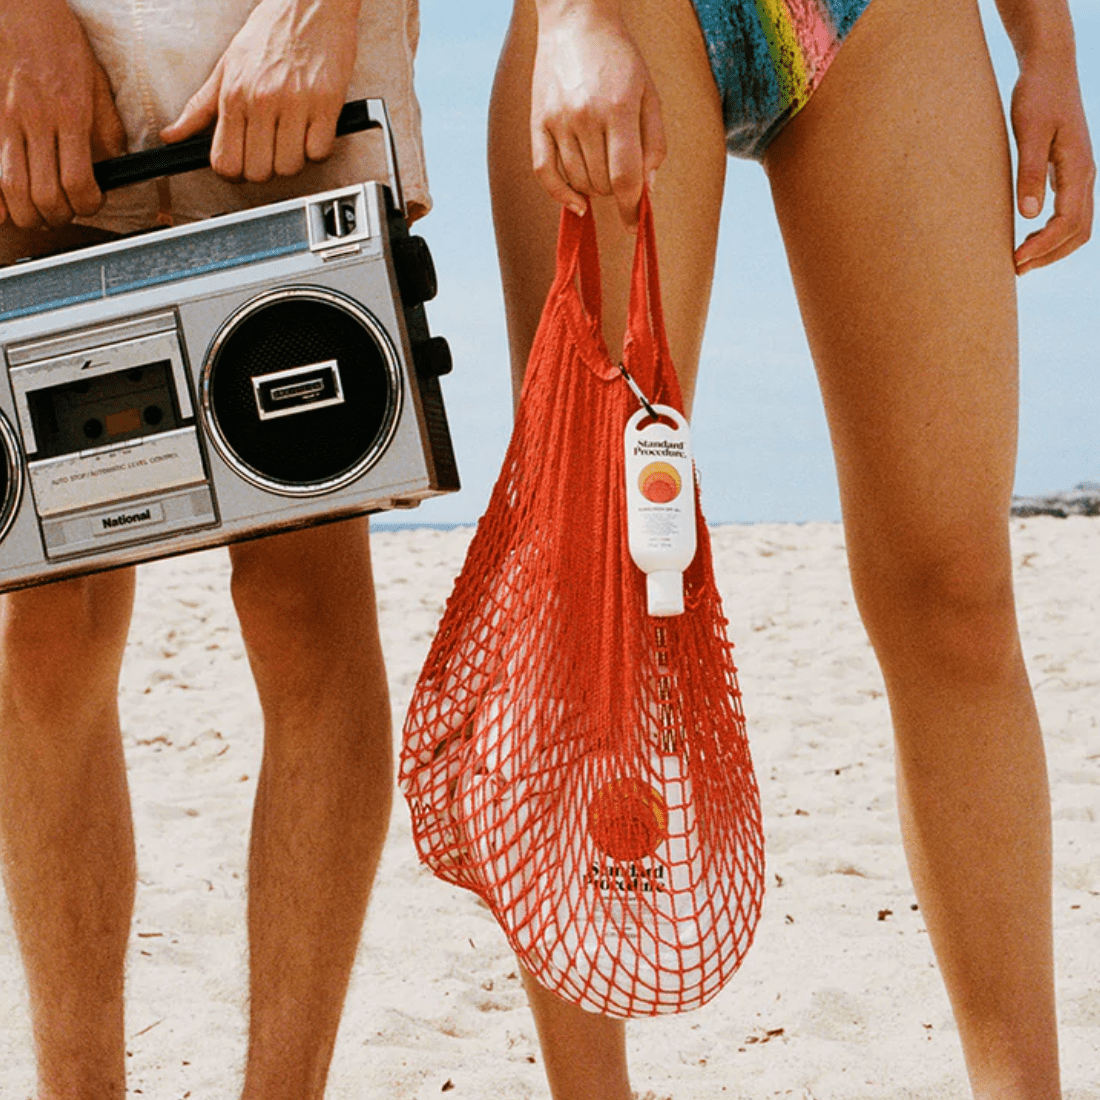 Crema solar spf50 Standard Procedure en bolsa de red en la playa